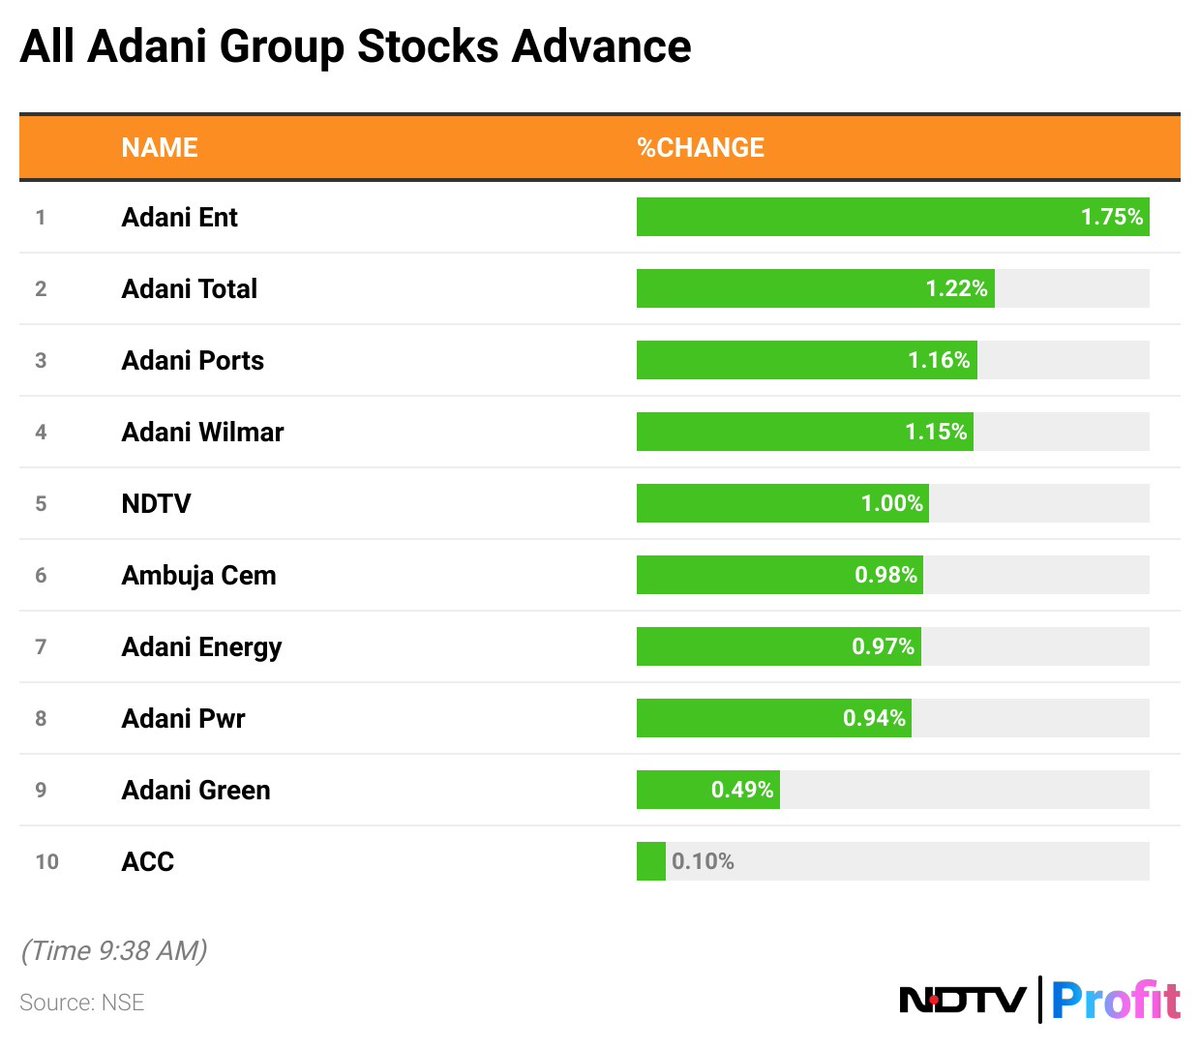 #AdaniGroup के सभी शेयरों में तेजी, #AdaniEnterprises और #AdaniTotal में सबसे ज्यादा उछाल

ओवरऑल मार्केट कैप 16.1 लाख करोड़ रुपये के पार

LIVE पढ़ें : bit.ly/44L1mF2